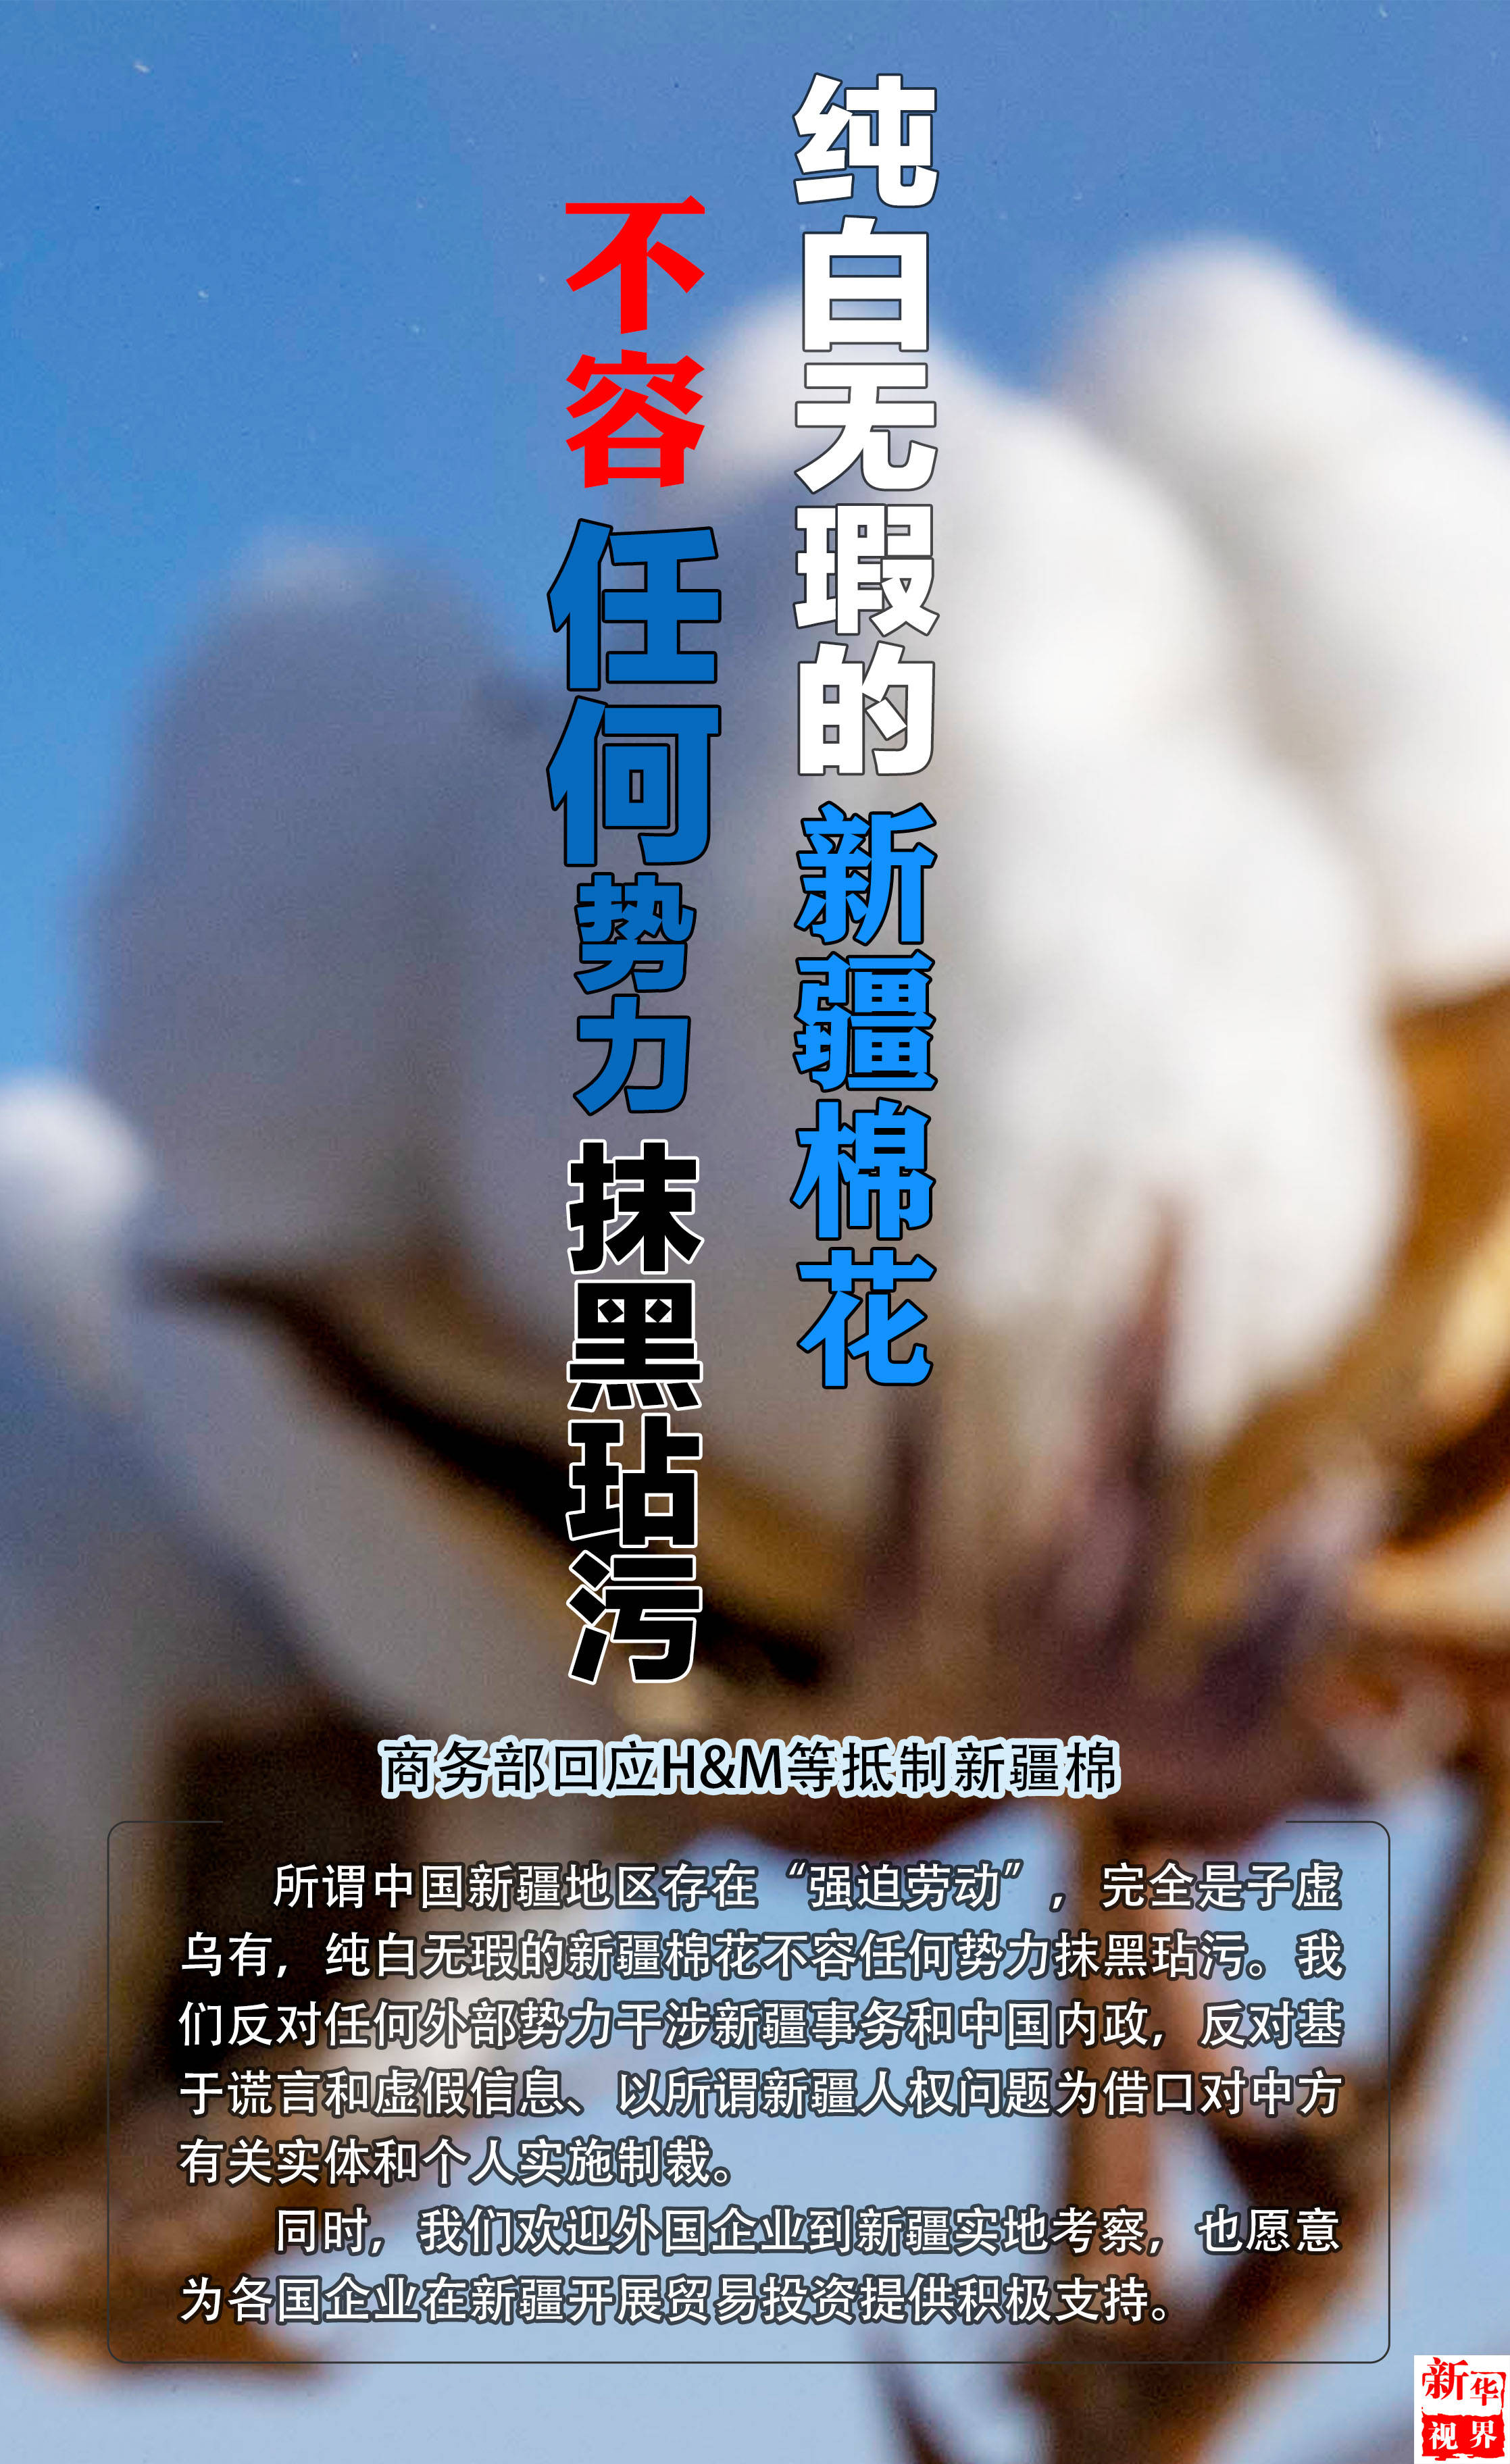 2021年3月25日海报:商务部回应h&m等抵制新疆棉:纯白无瑕的新疆棉花不